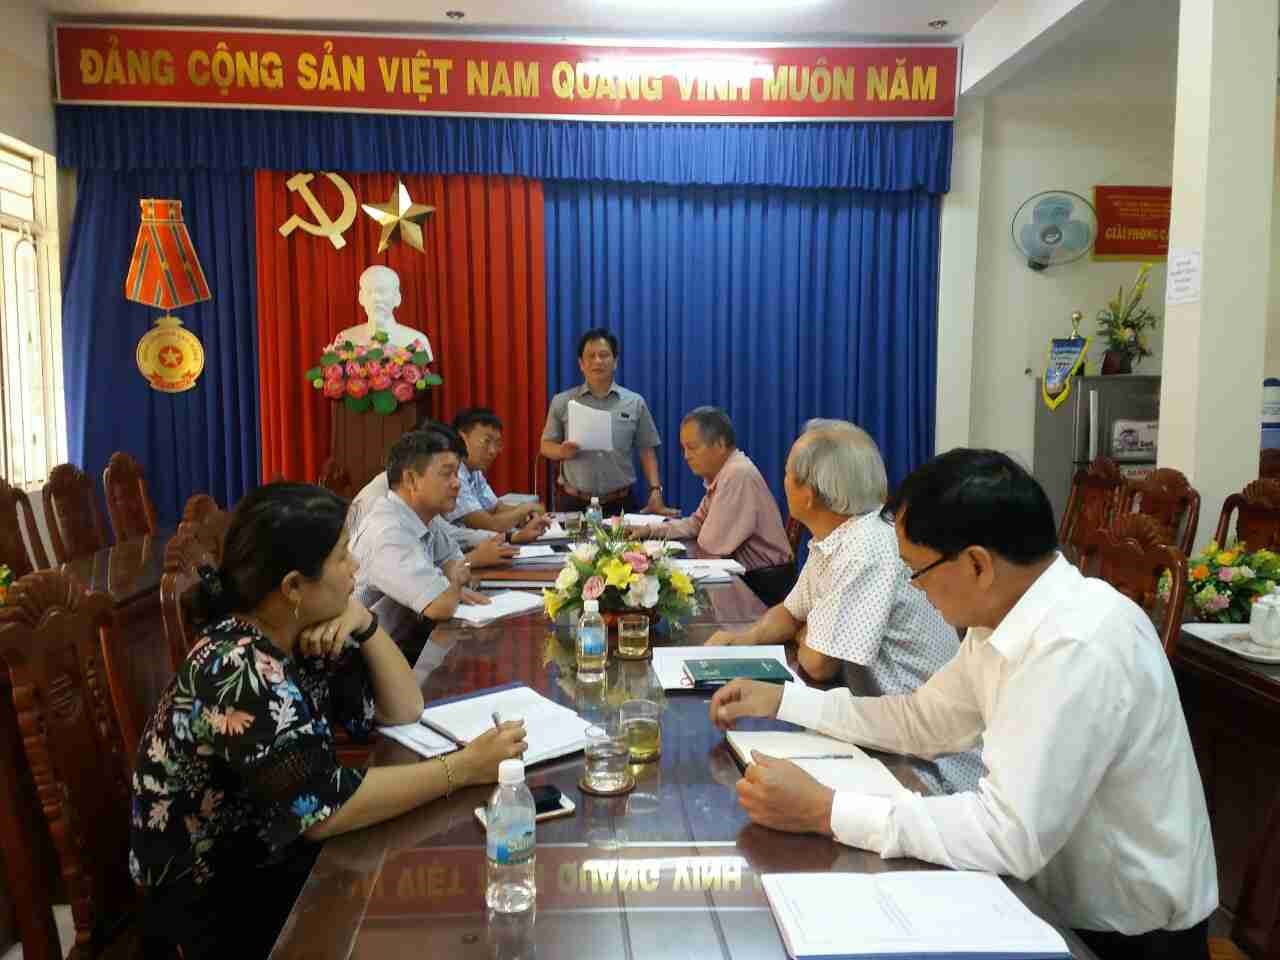 Thẩm định đề cương chi tiết  lịch sử Đảng bộ Đảng Cộng sản Việt Nam  huyện Vạn Ninh giai đoạn 1975  - 2015